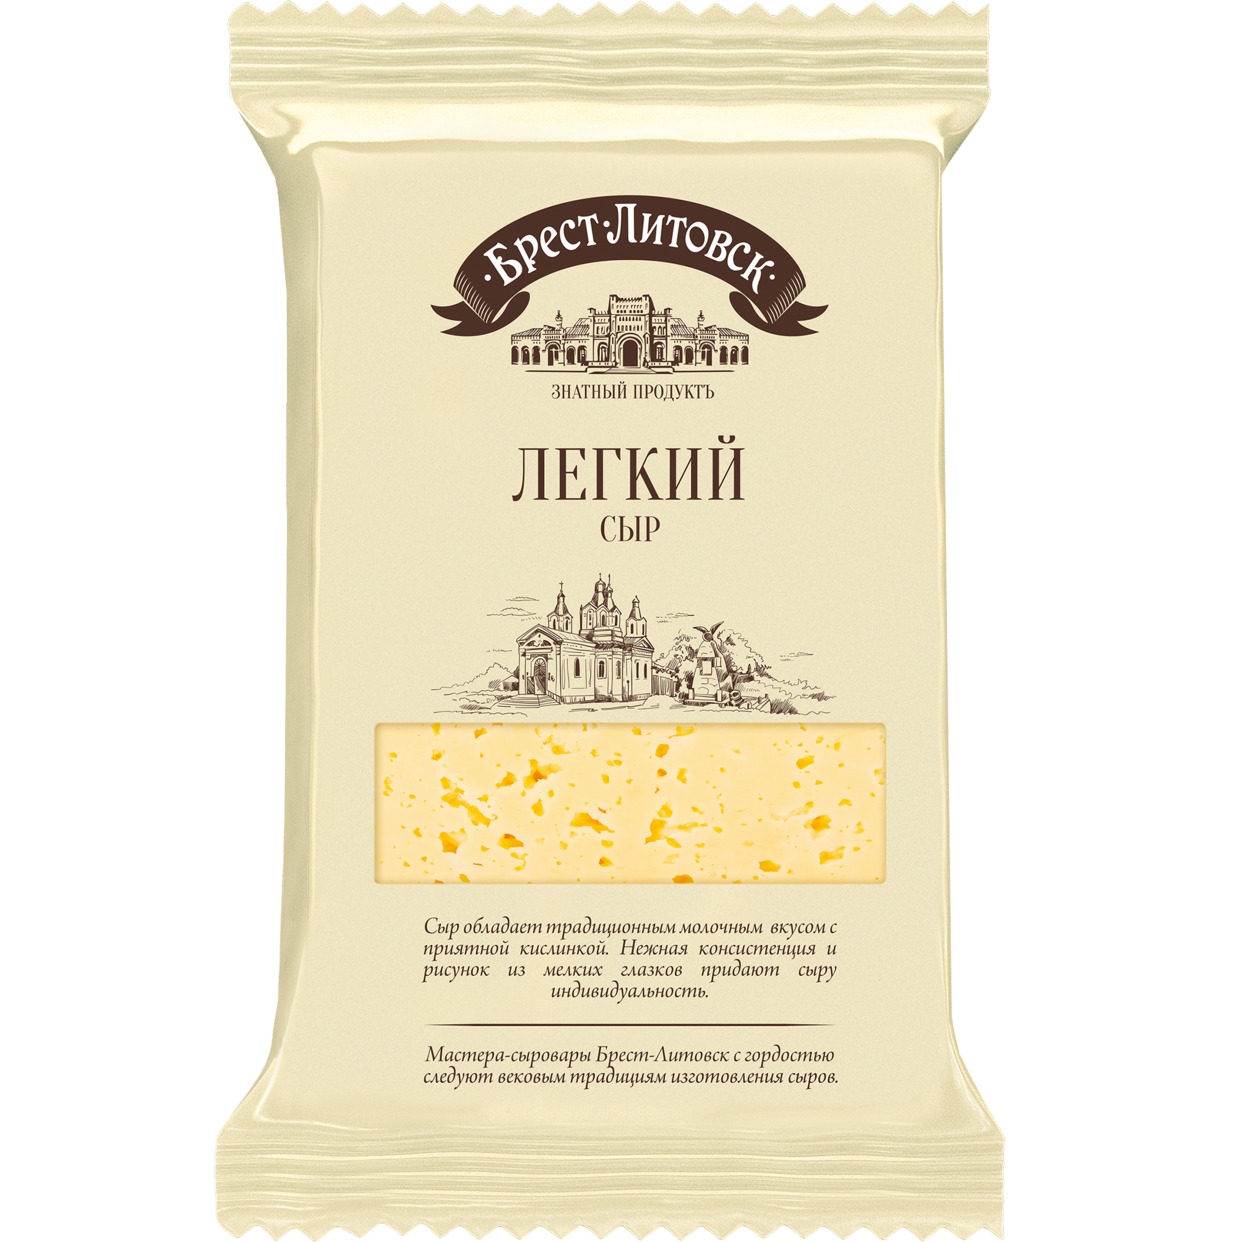 Сыр Легкий, Брест Литовск, 200 г